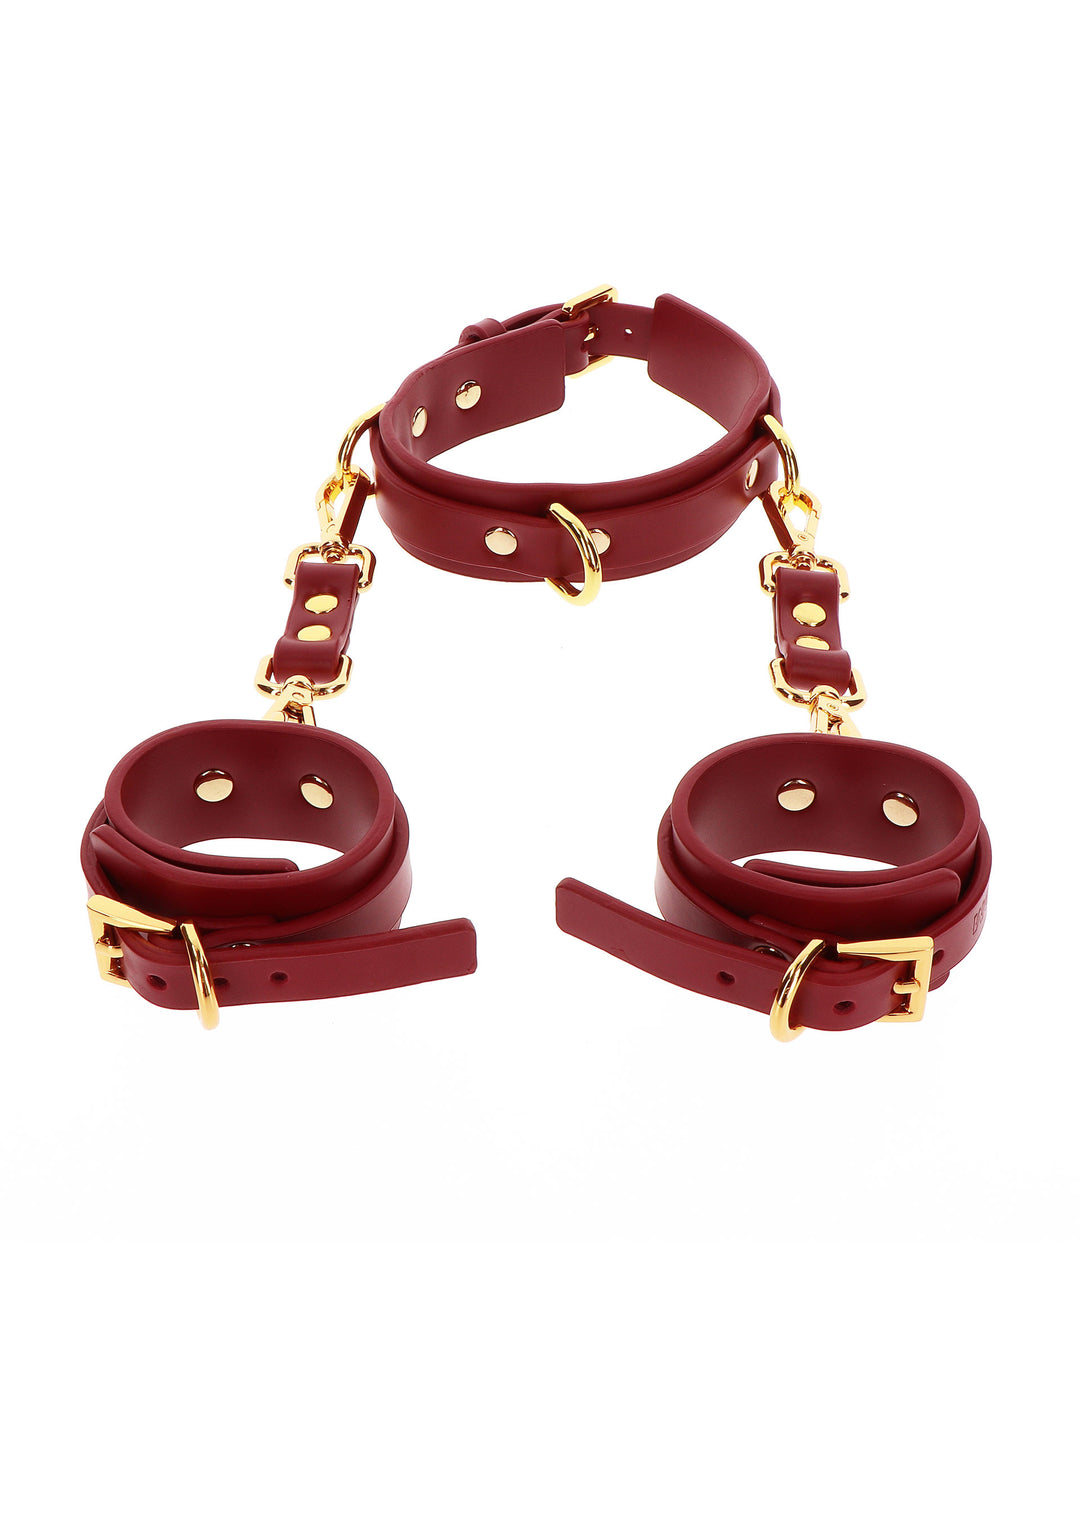 Collare con manette bondage D-Ring Collar and Wrist Cuffs